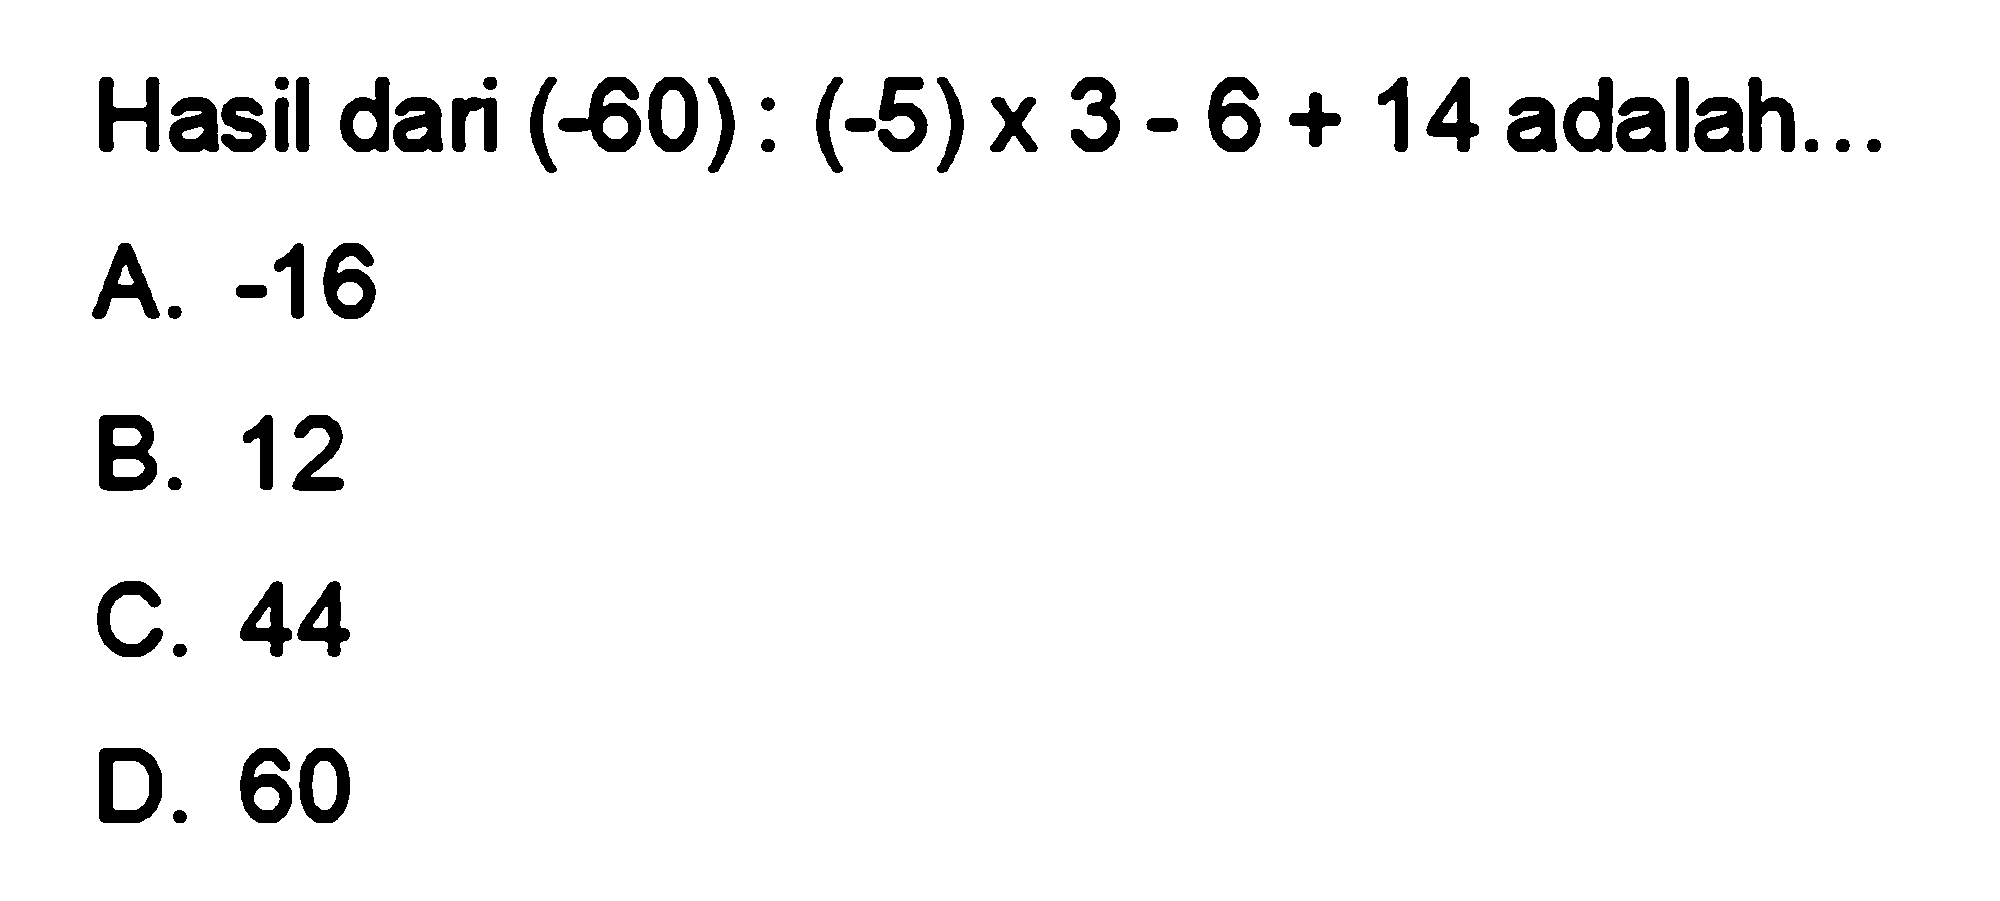 Hasil dari ( -60) : ( -5) x 3 - 6 + 14 adalah .=